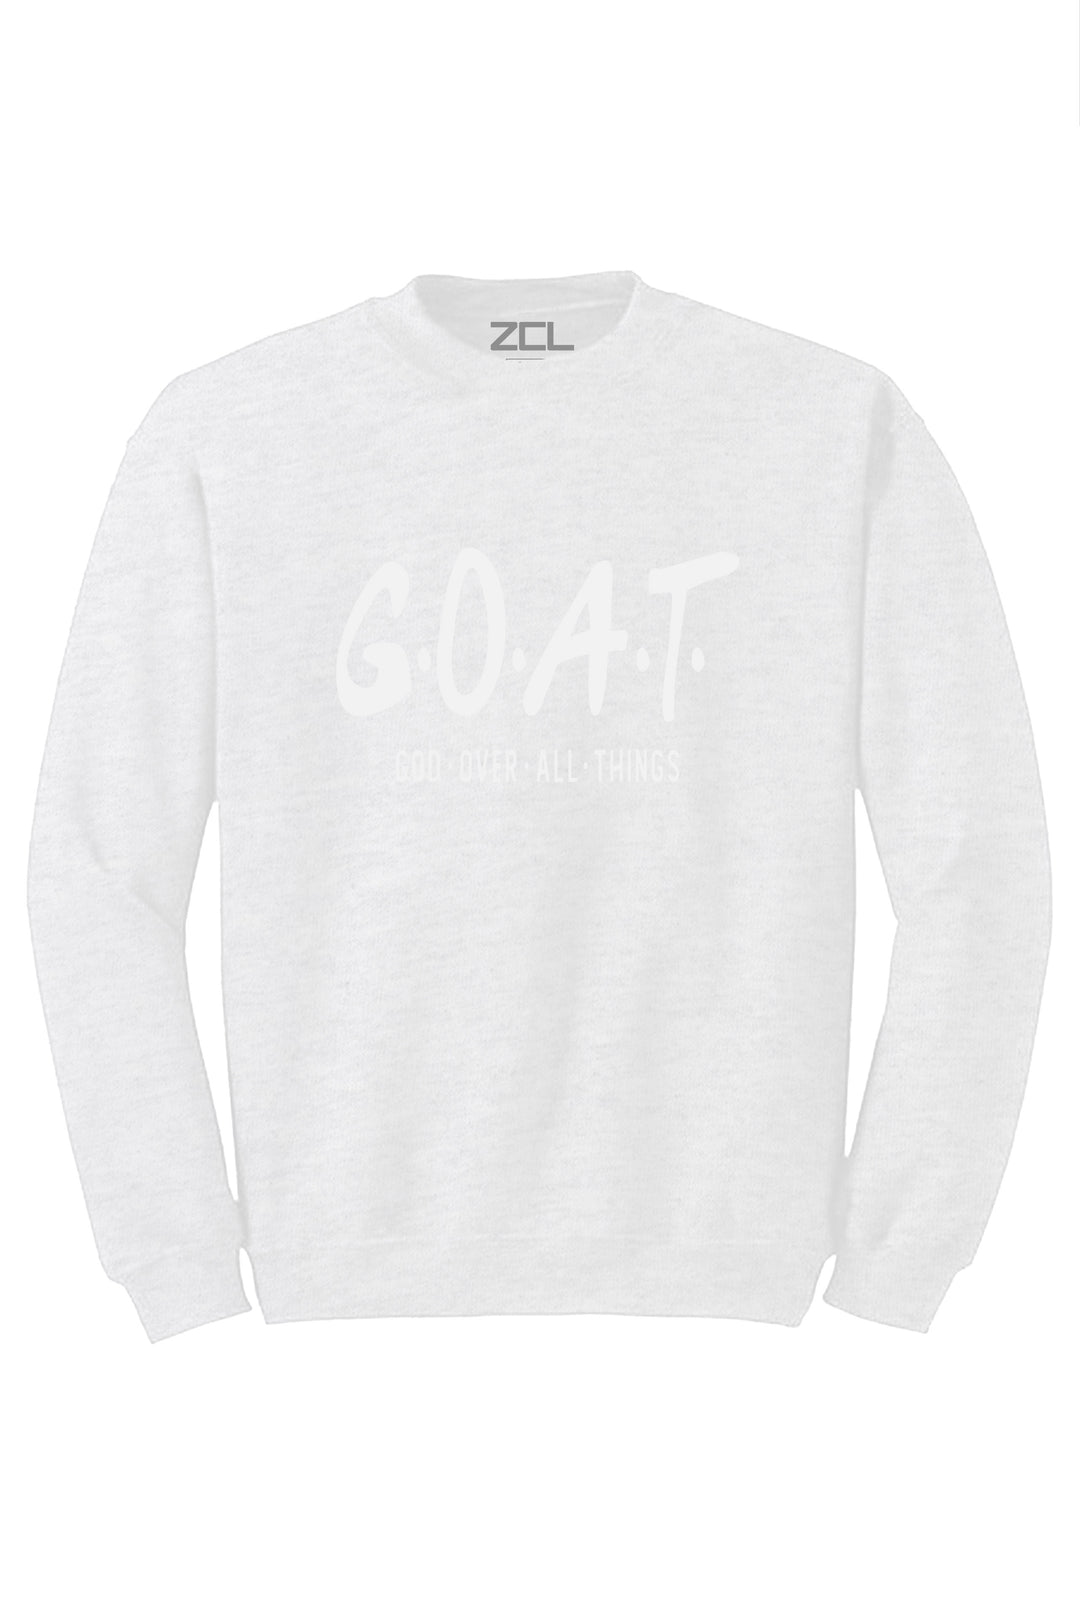 God Over All Things Crewneck Sweatshirt (White Logo) - Zamage